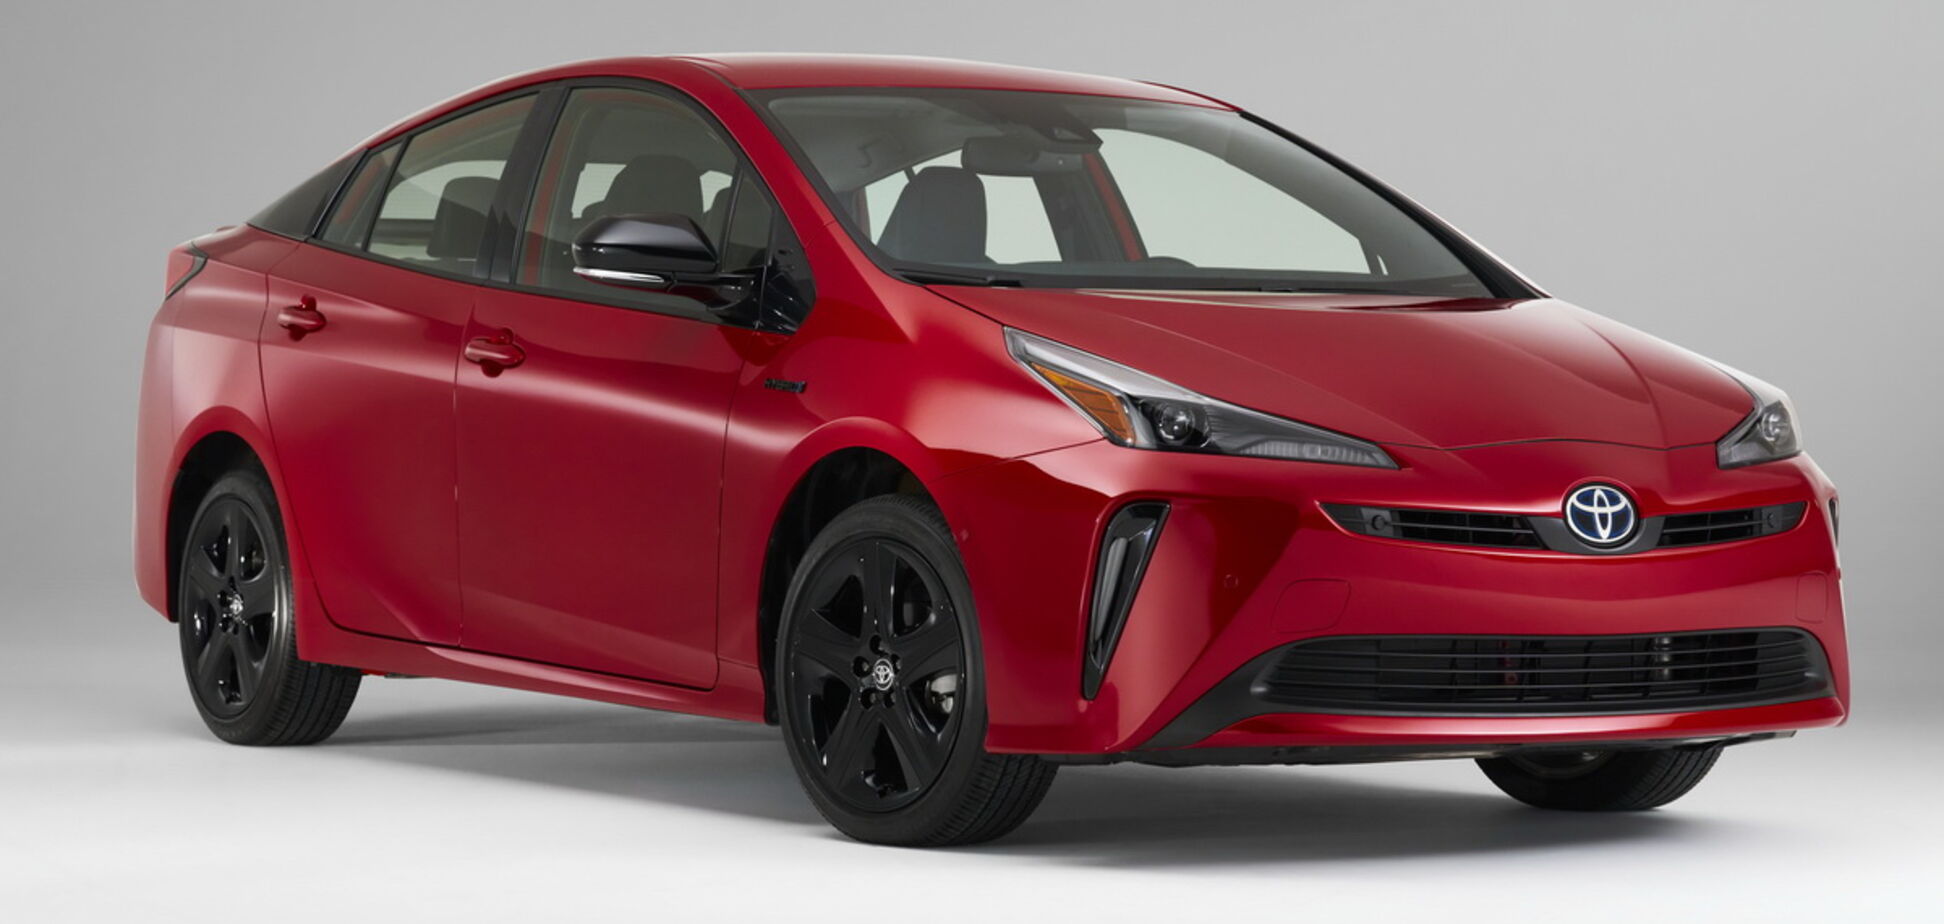 Toyota підготувала ювілейну версію Prius 2020 Edition